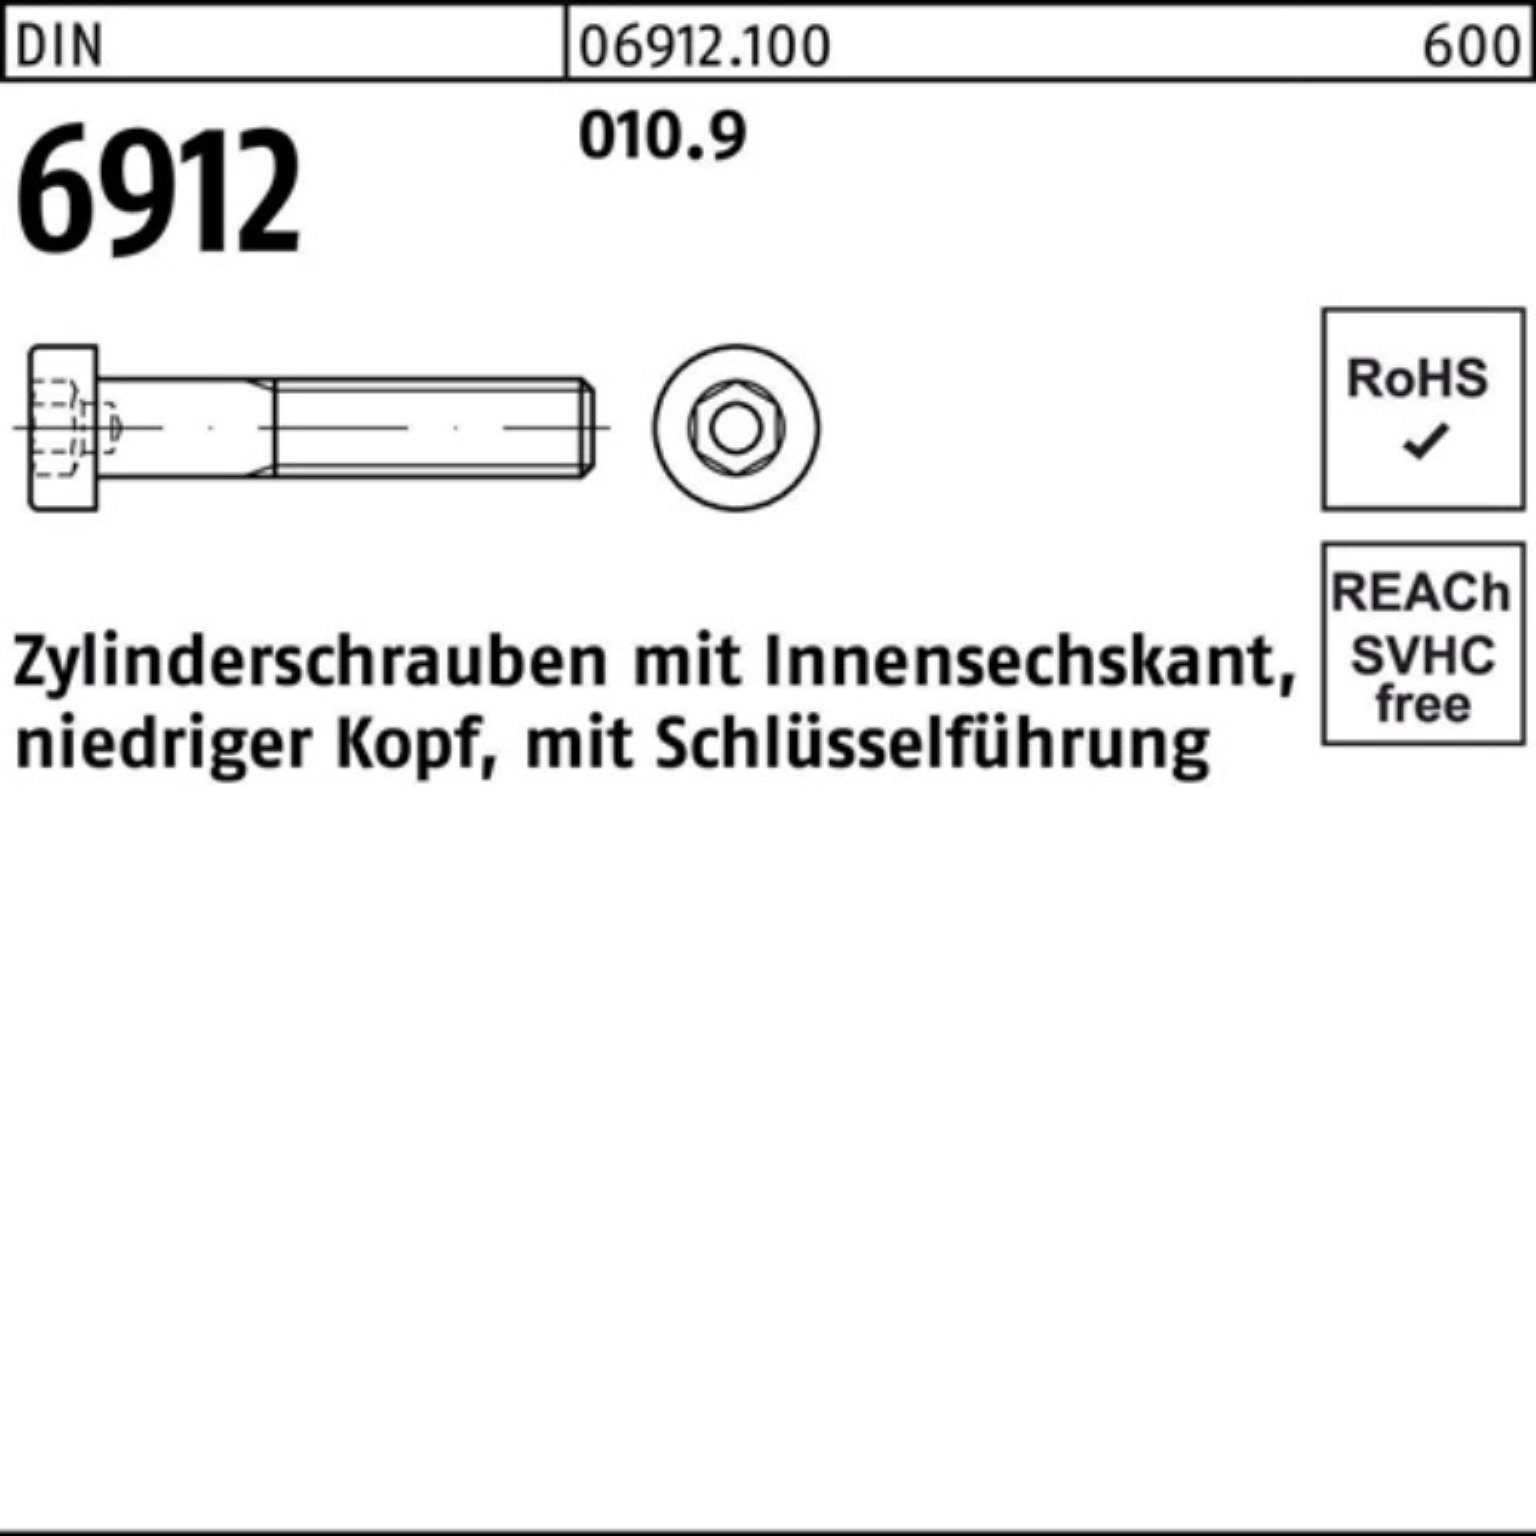 Pack 6912 Zylinderschraube Innen-6kt M6x Reyher Zylinderschraube 010.9 25 Stück DIN 500 500er